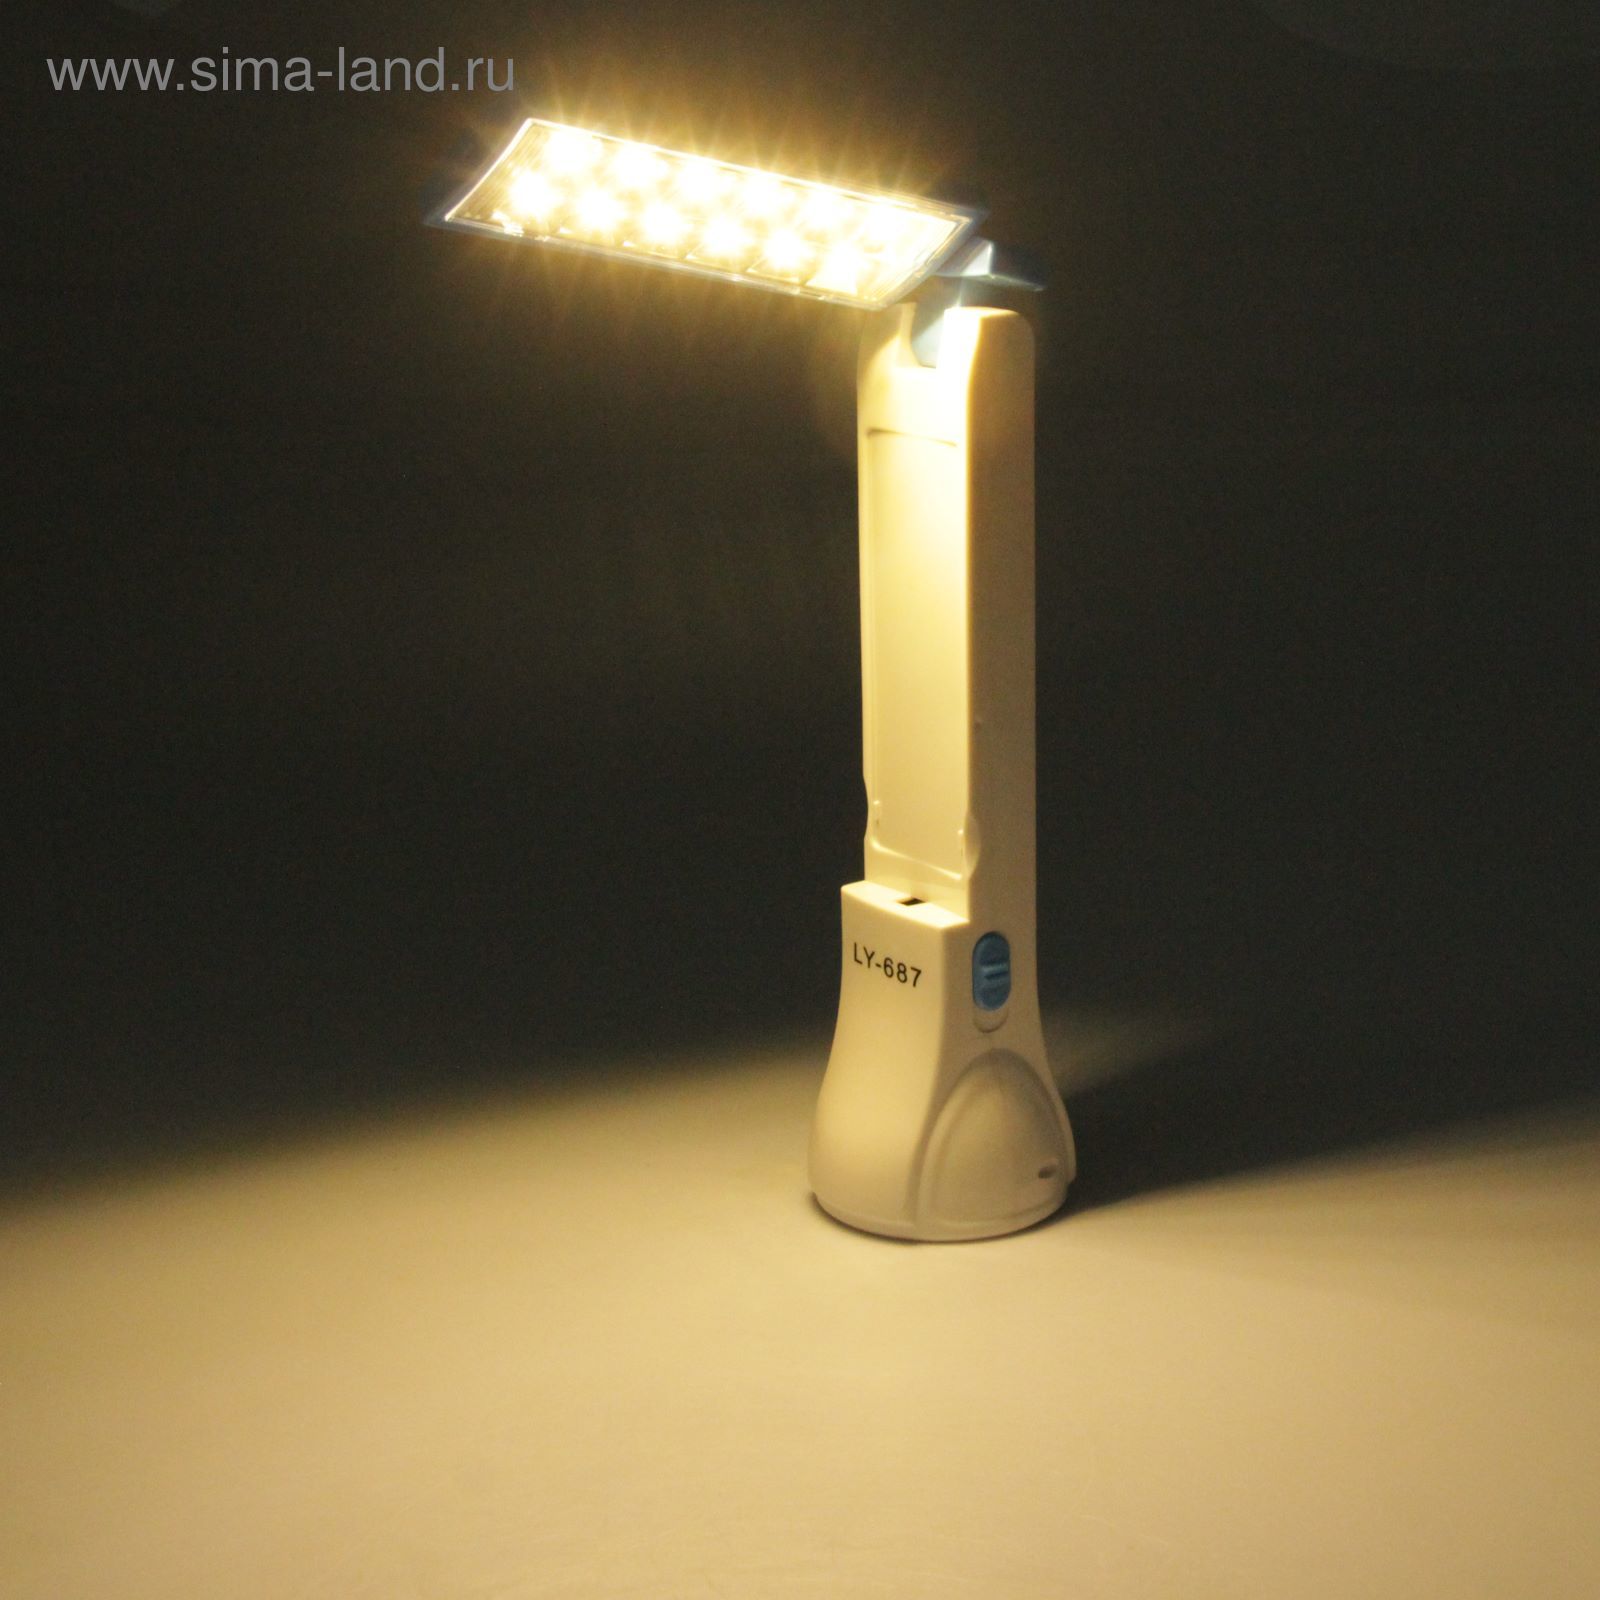 Фонарь с выдвижной лампой, от сети,солнечная бат., 23*6,5*6,5см